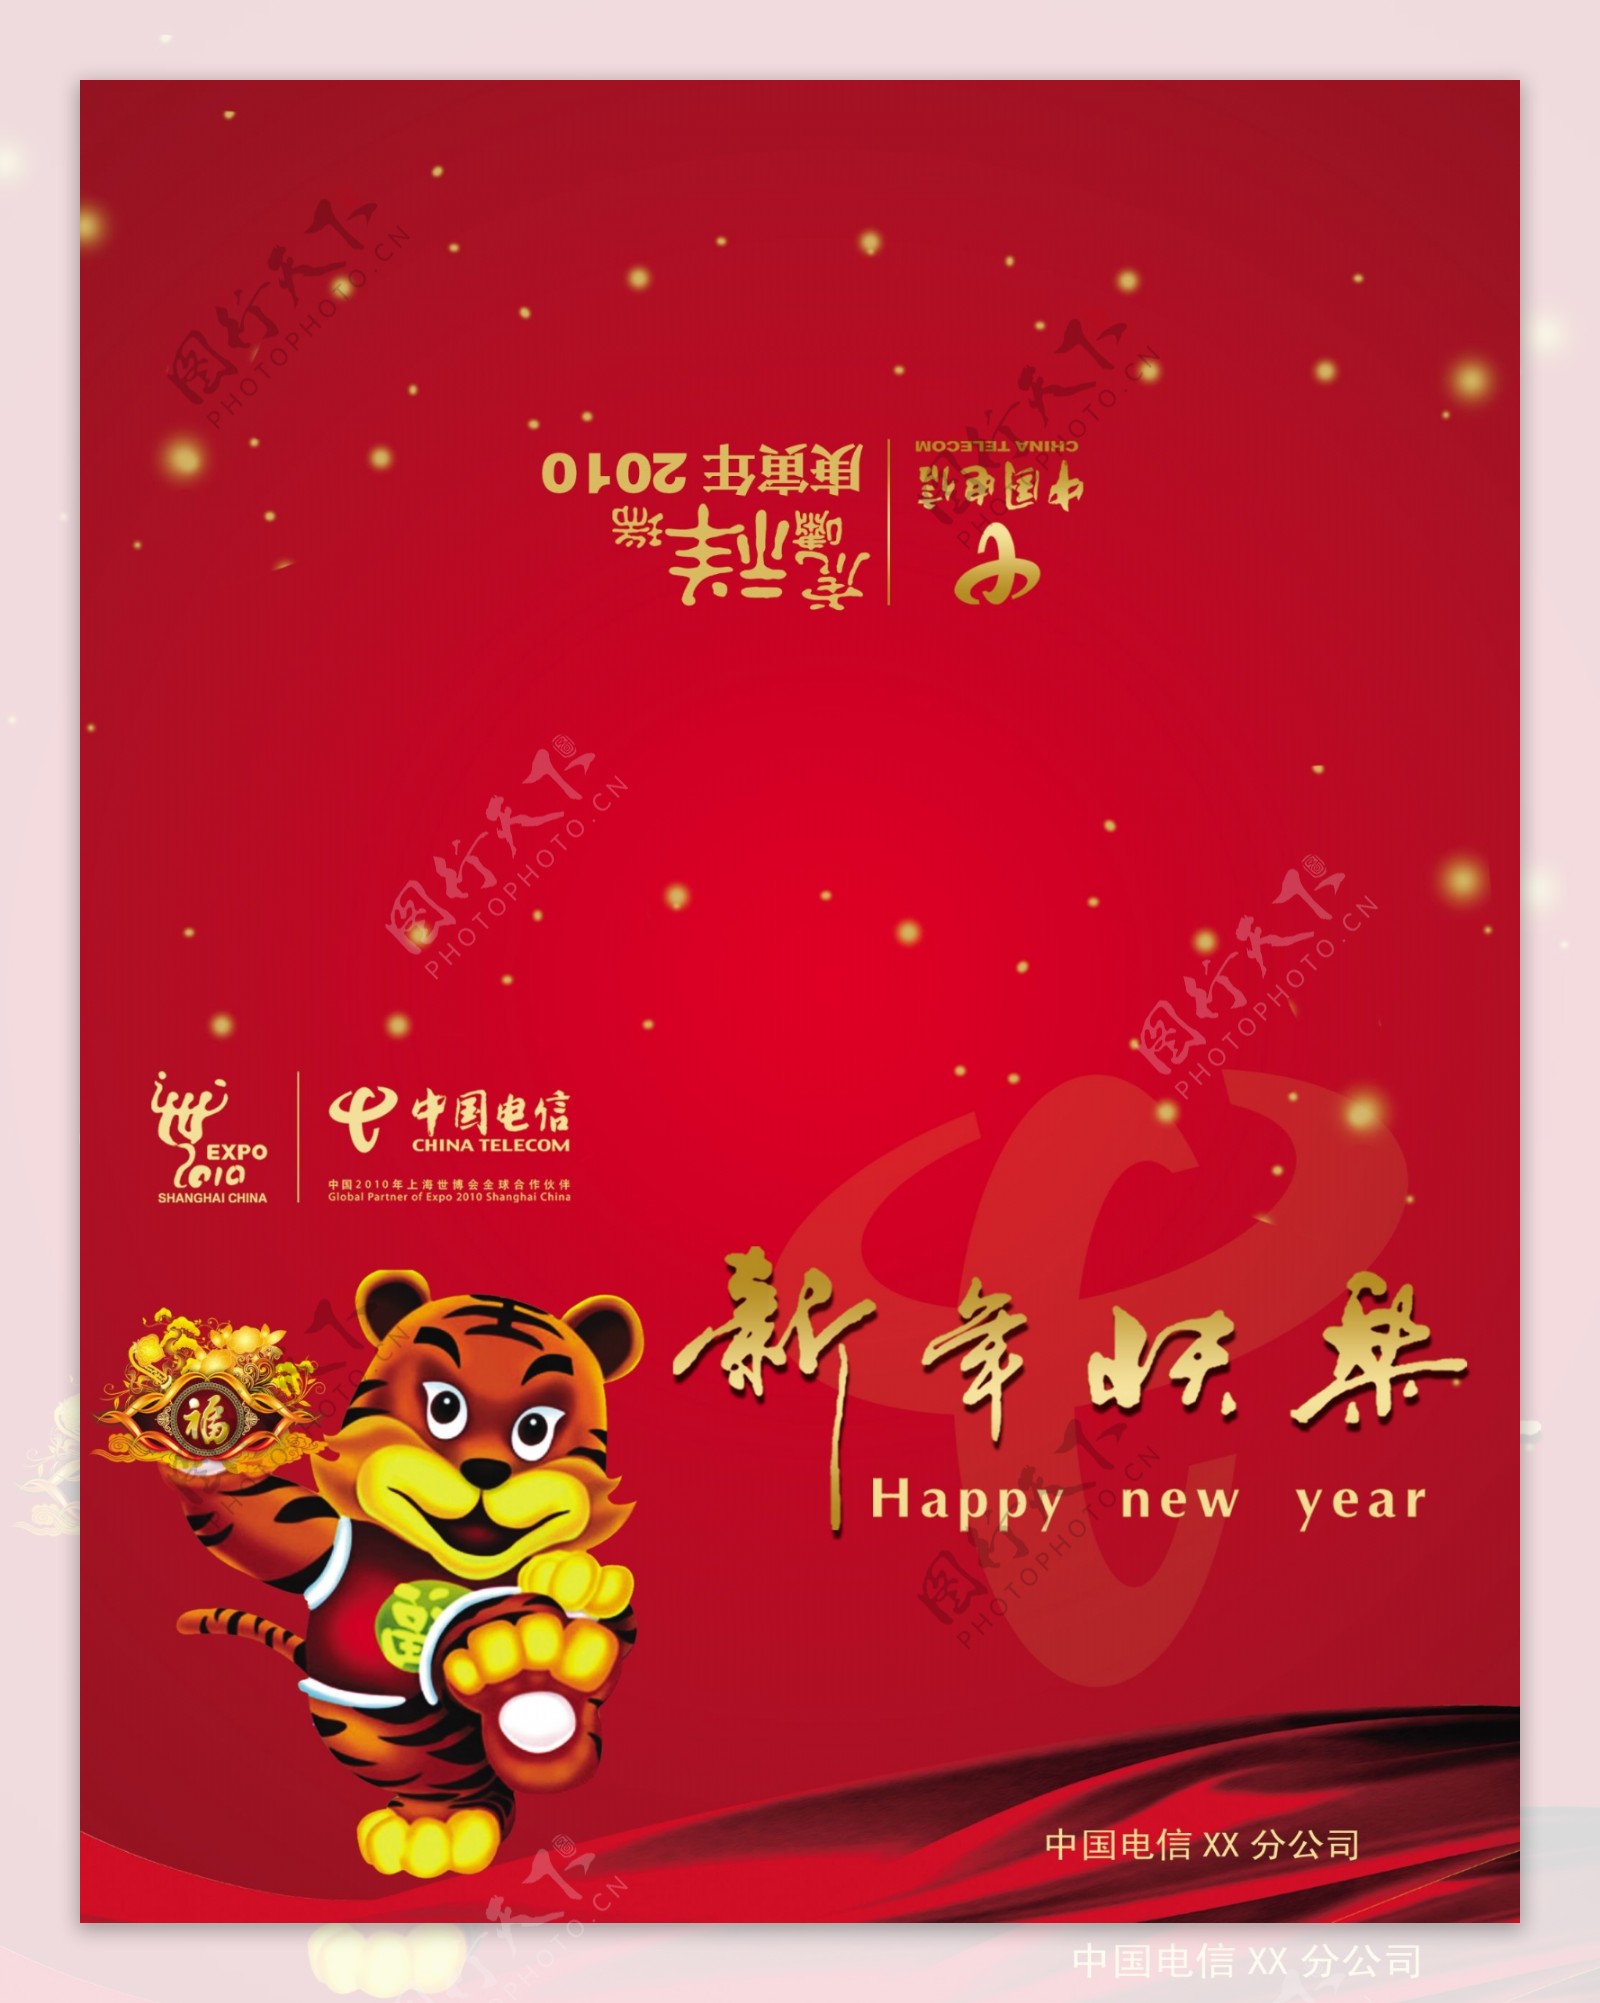 中国电信2009贺年卡图片